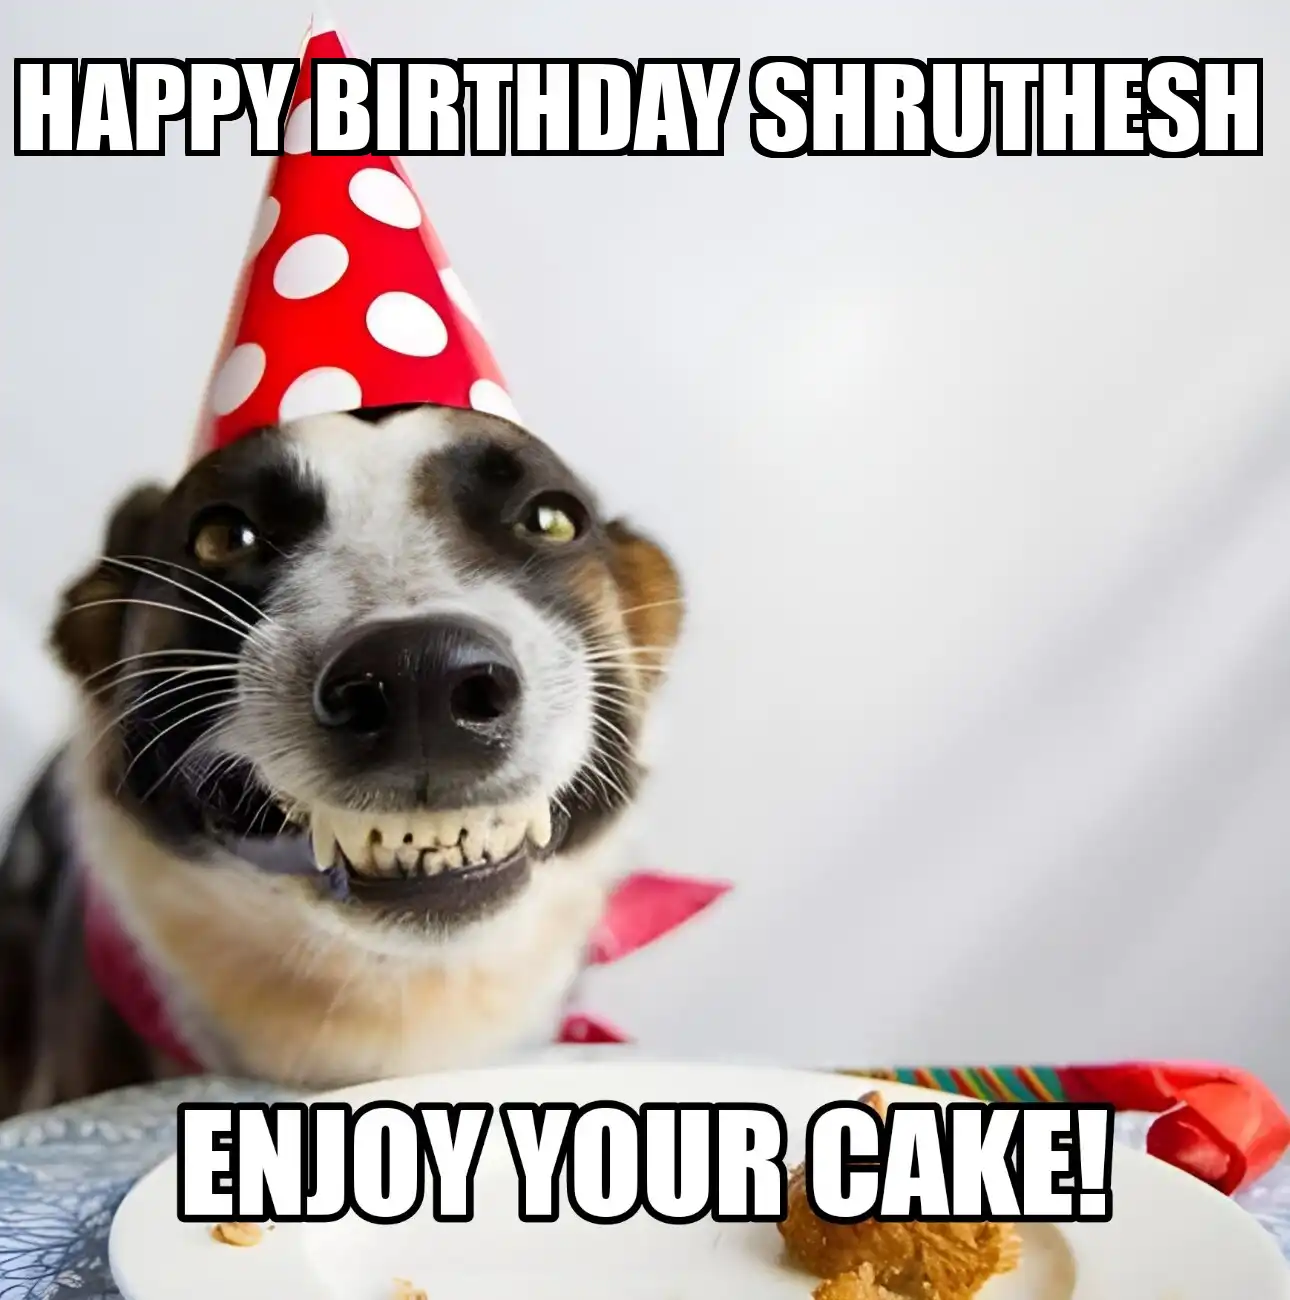 Happy Birthday Shruthesh Enjoy Your Cake Dog Meme